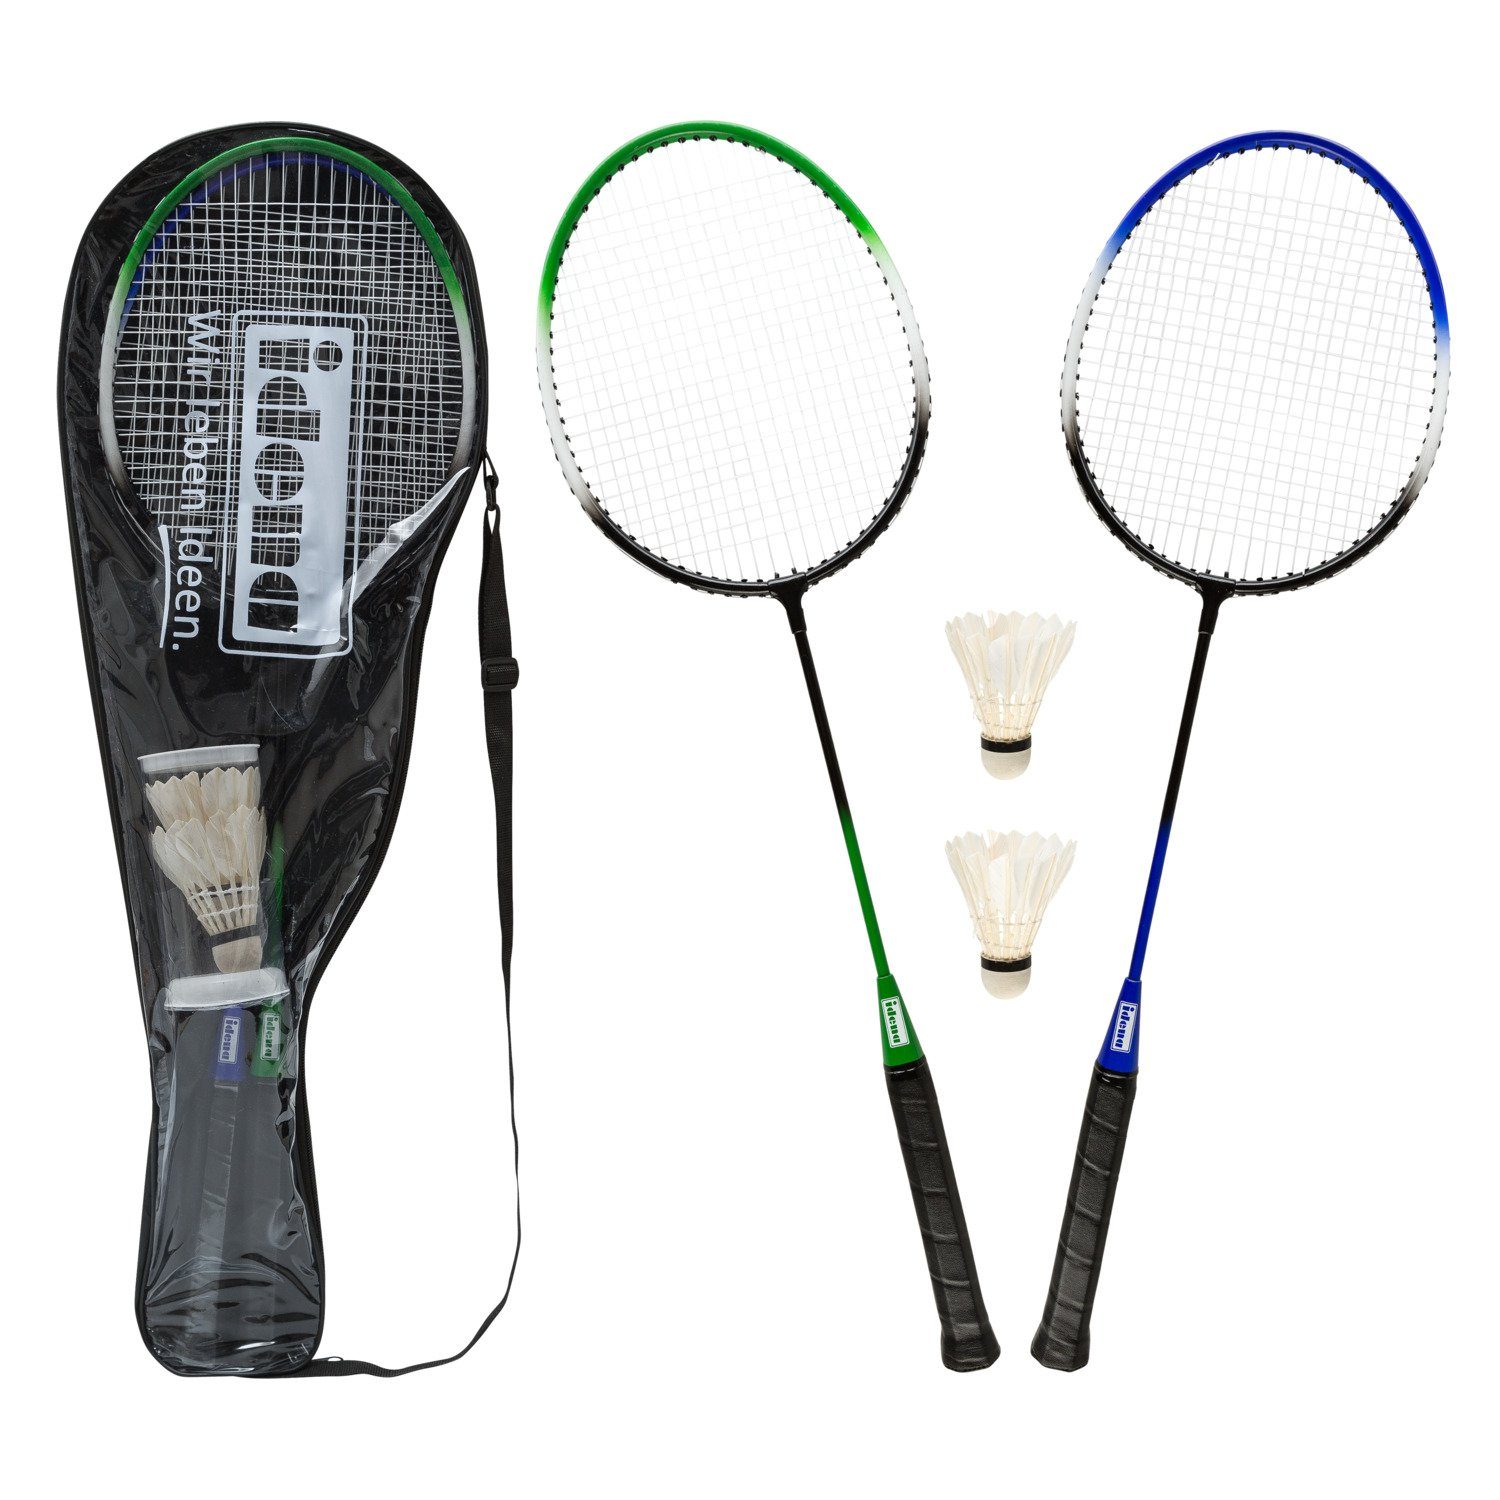 Idena Badmintonschläger Idena 40190 - Badminton Set mit 2 Schlägern und 2 Federbällen in prakt, (Set)